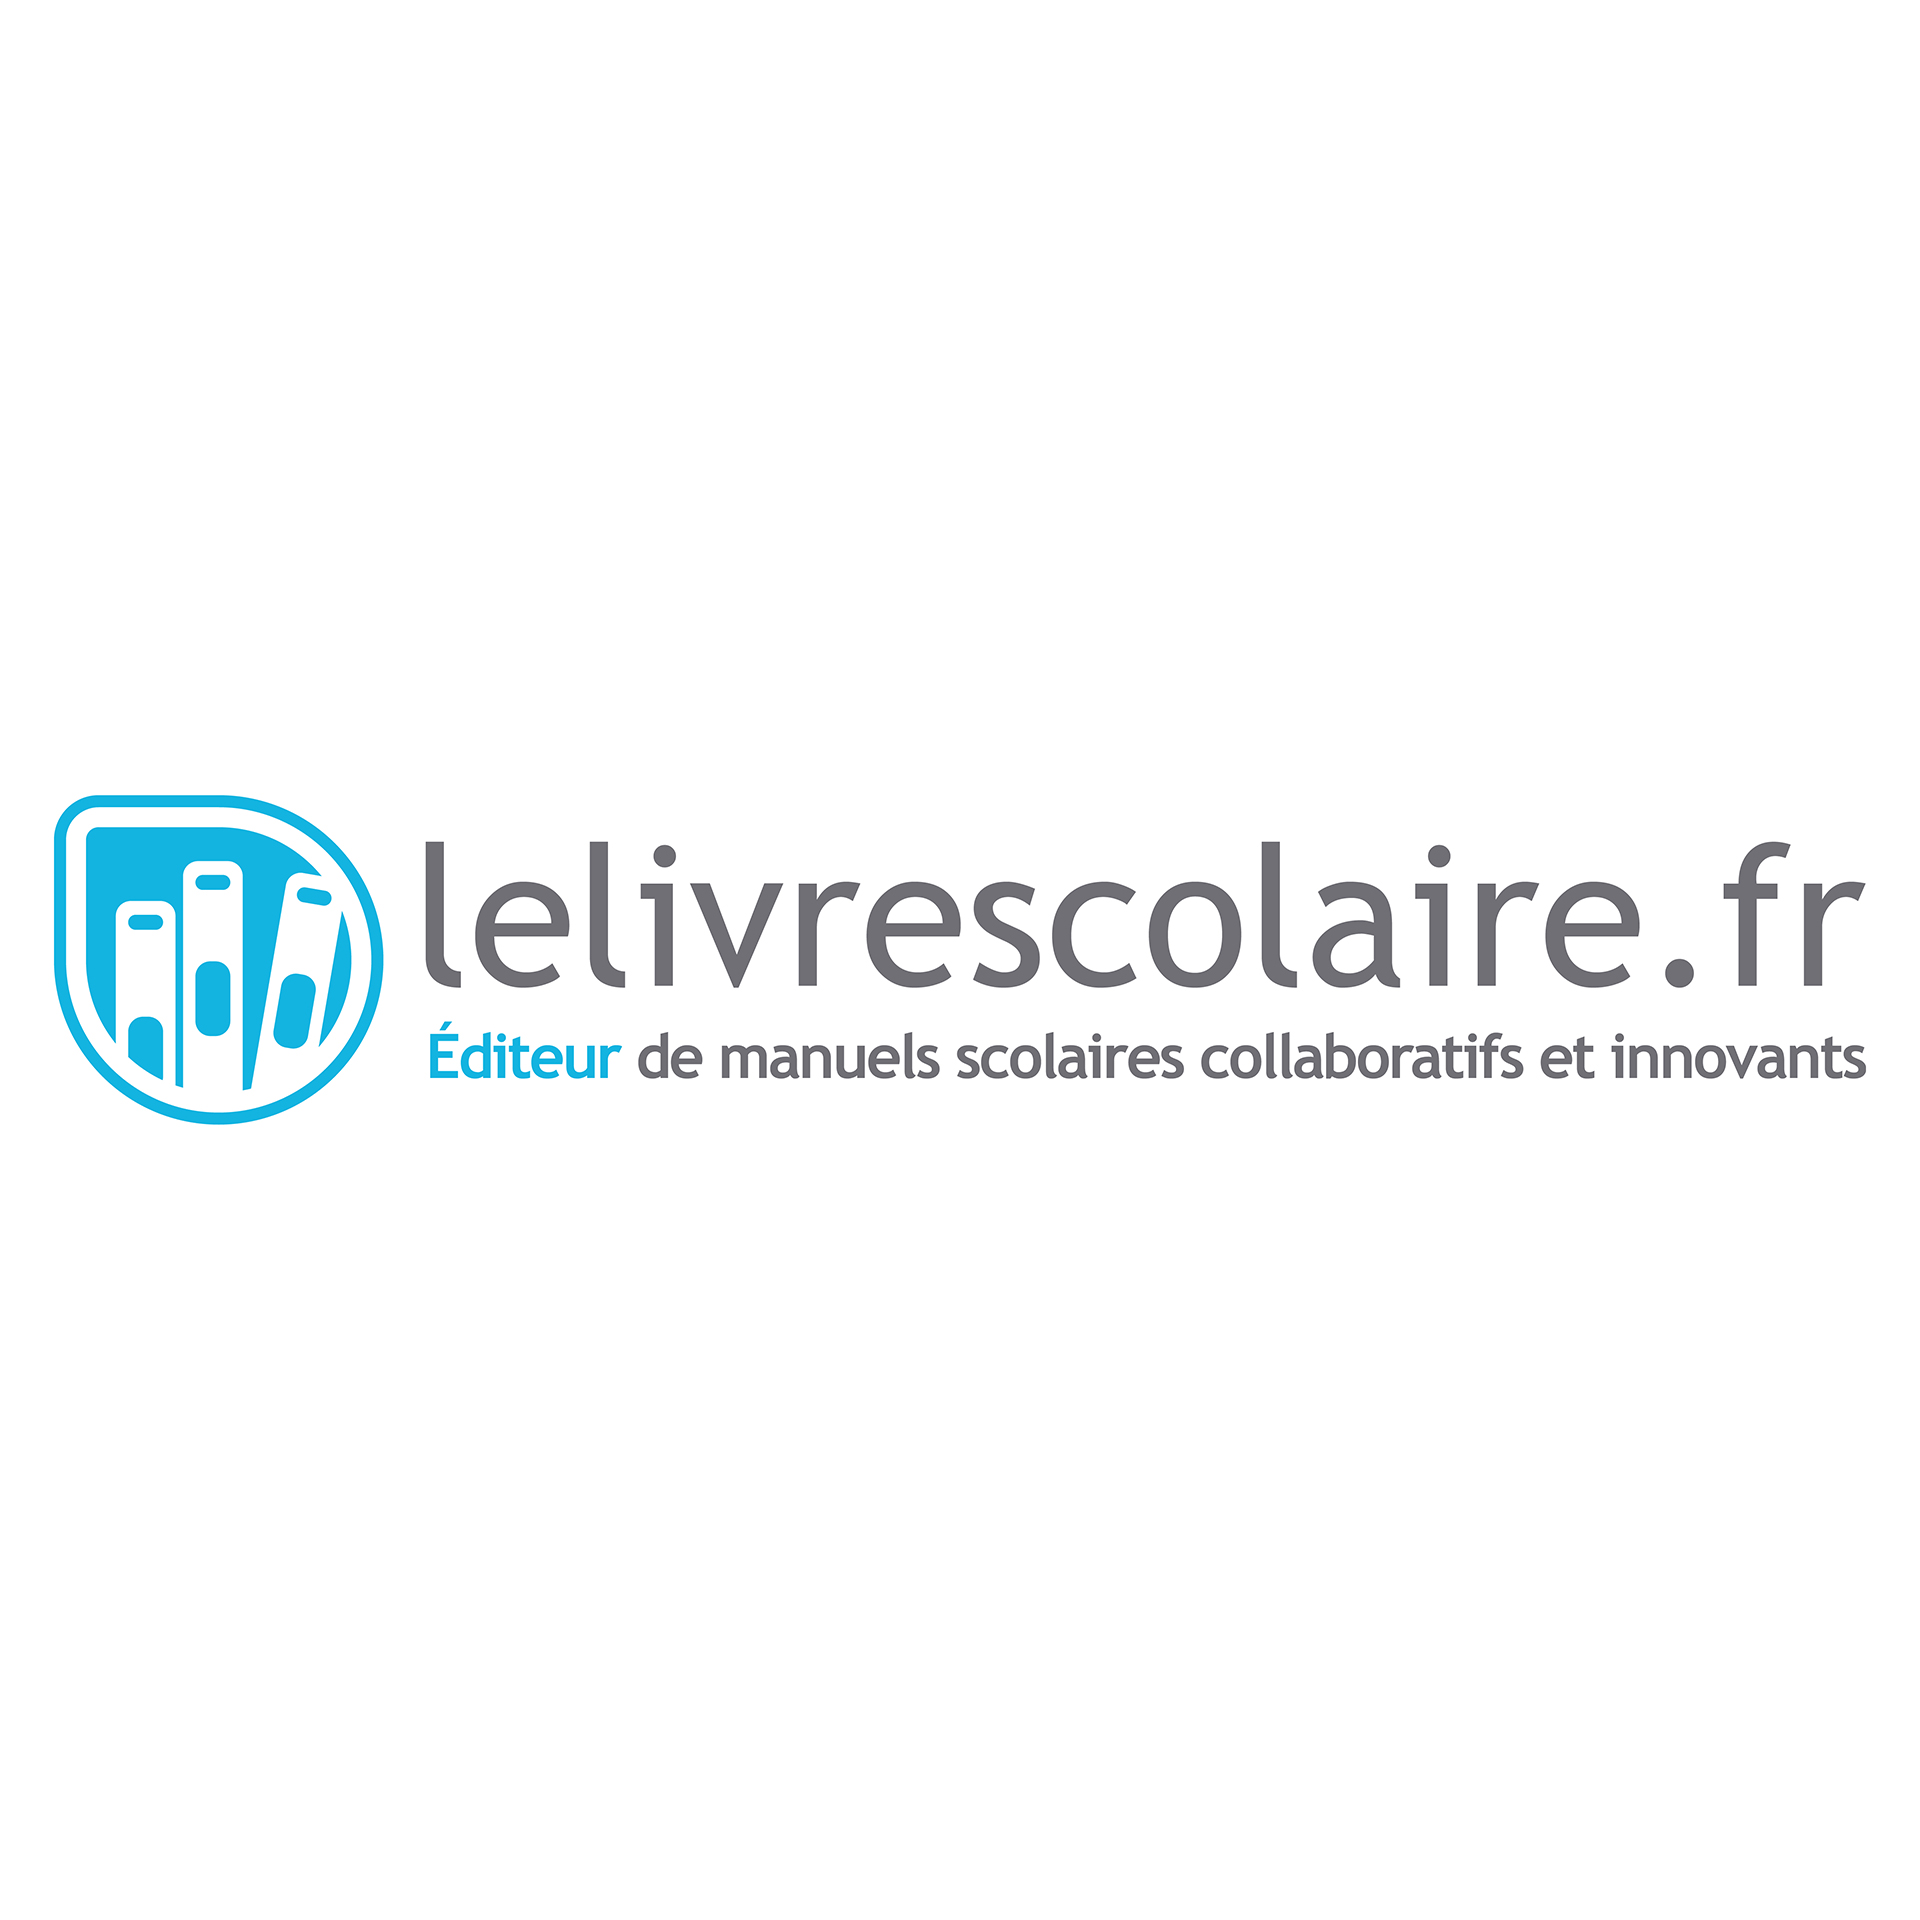 Voir la success story À Lyon, Lelivrescolaire.fr décolle dans l’édition numérique